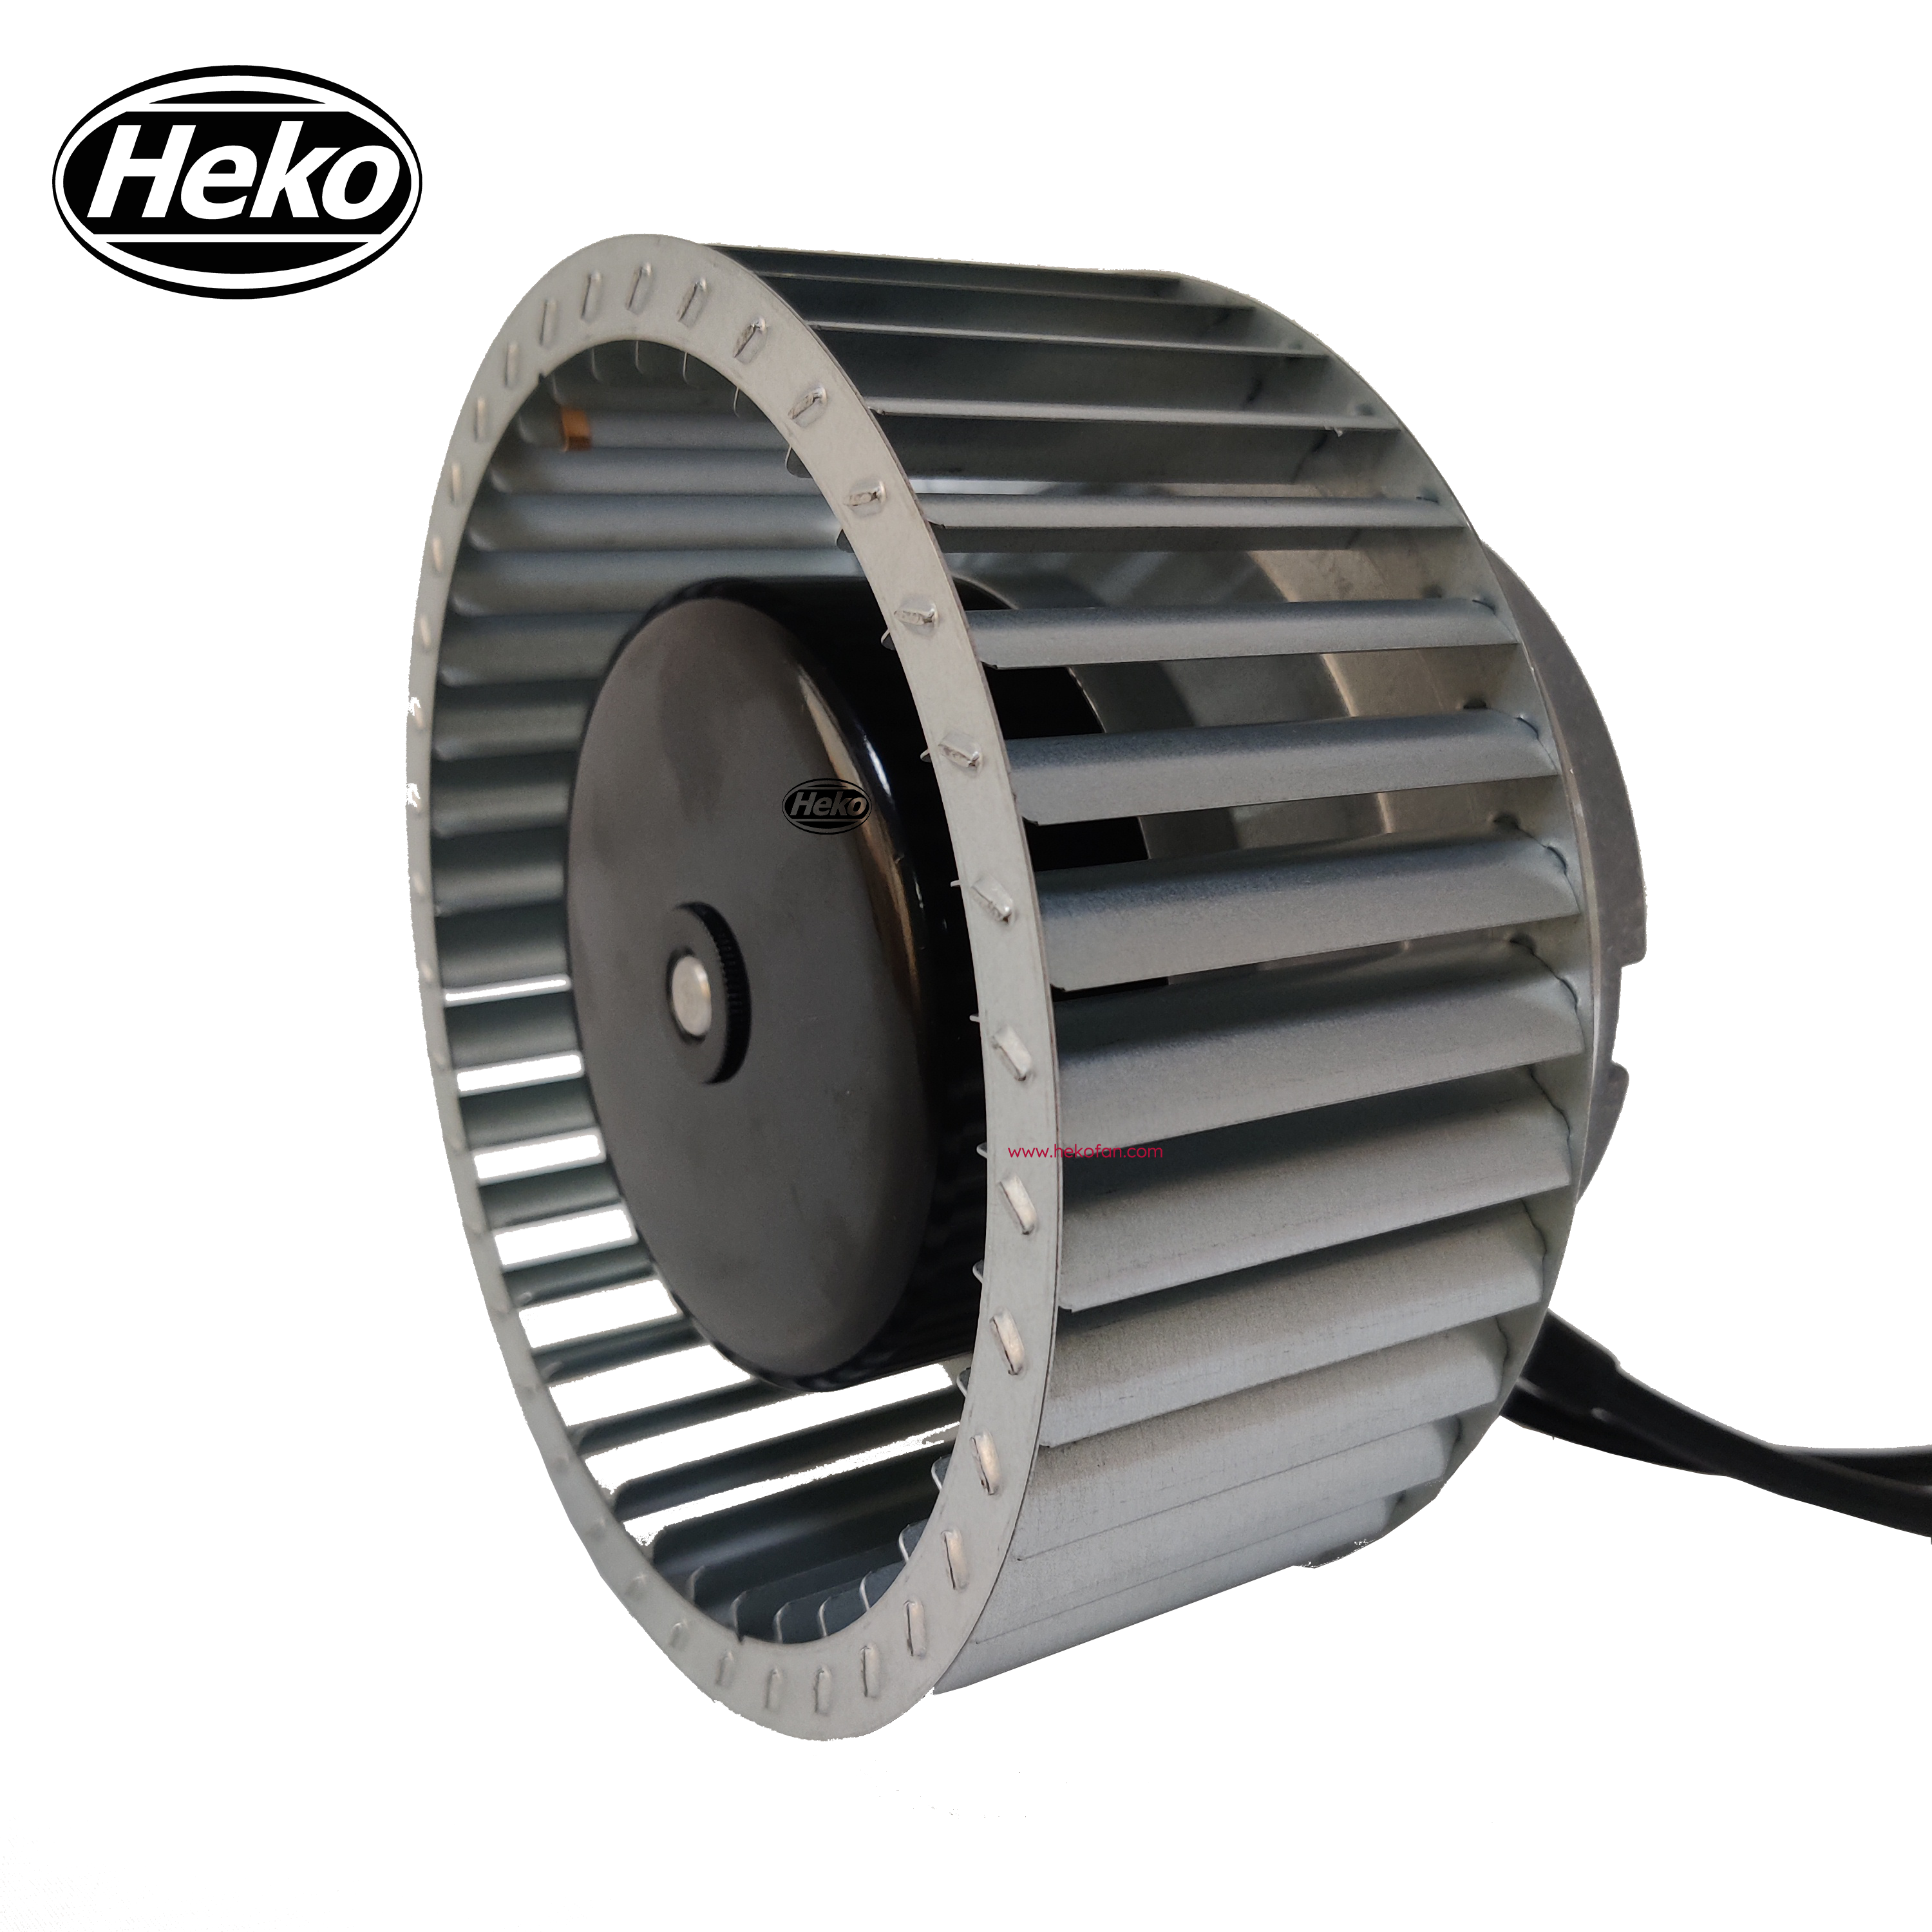 Ventilador centrífugo curvado hacia adelante industrial HEKO EC160mm 230V